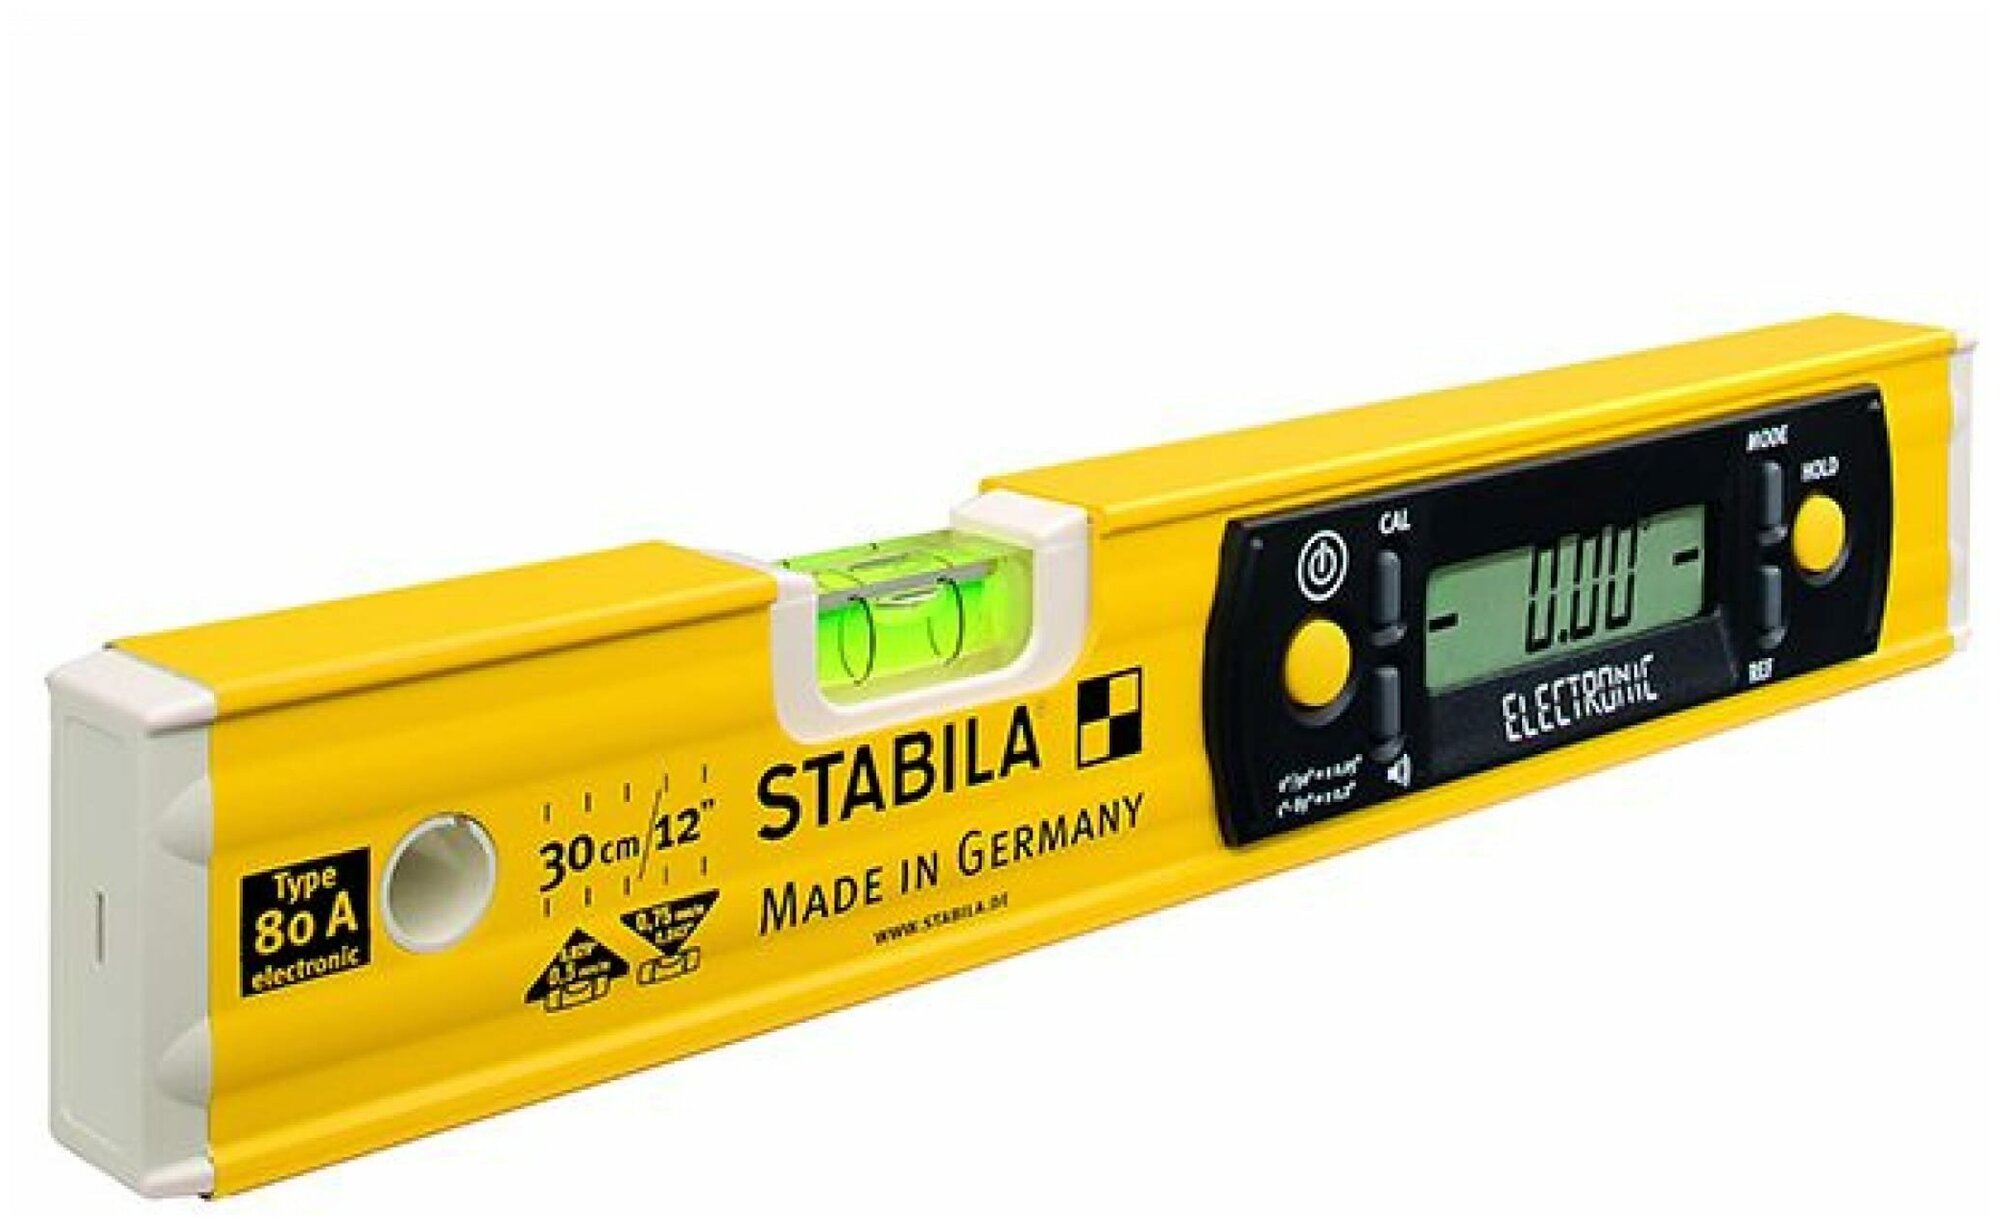 STABILA Уровень тип 80A electronic 30см точность 05 мм/м Электронный уровень / цифровая система индикации дисплея / Акустическое определение направление угла наклона с помощью сигнала / IP 54 (арт. 17323)